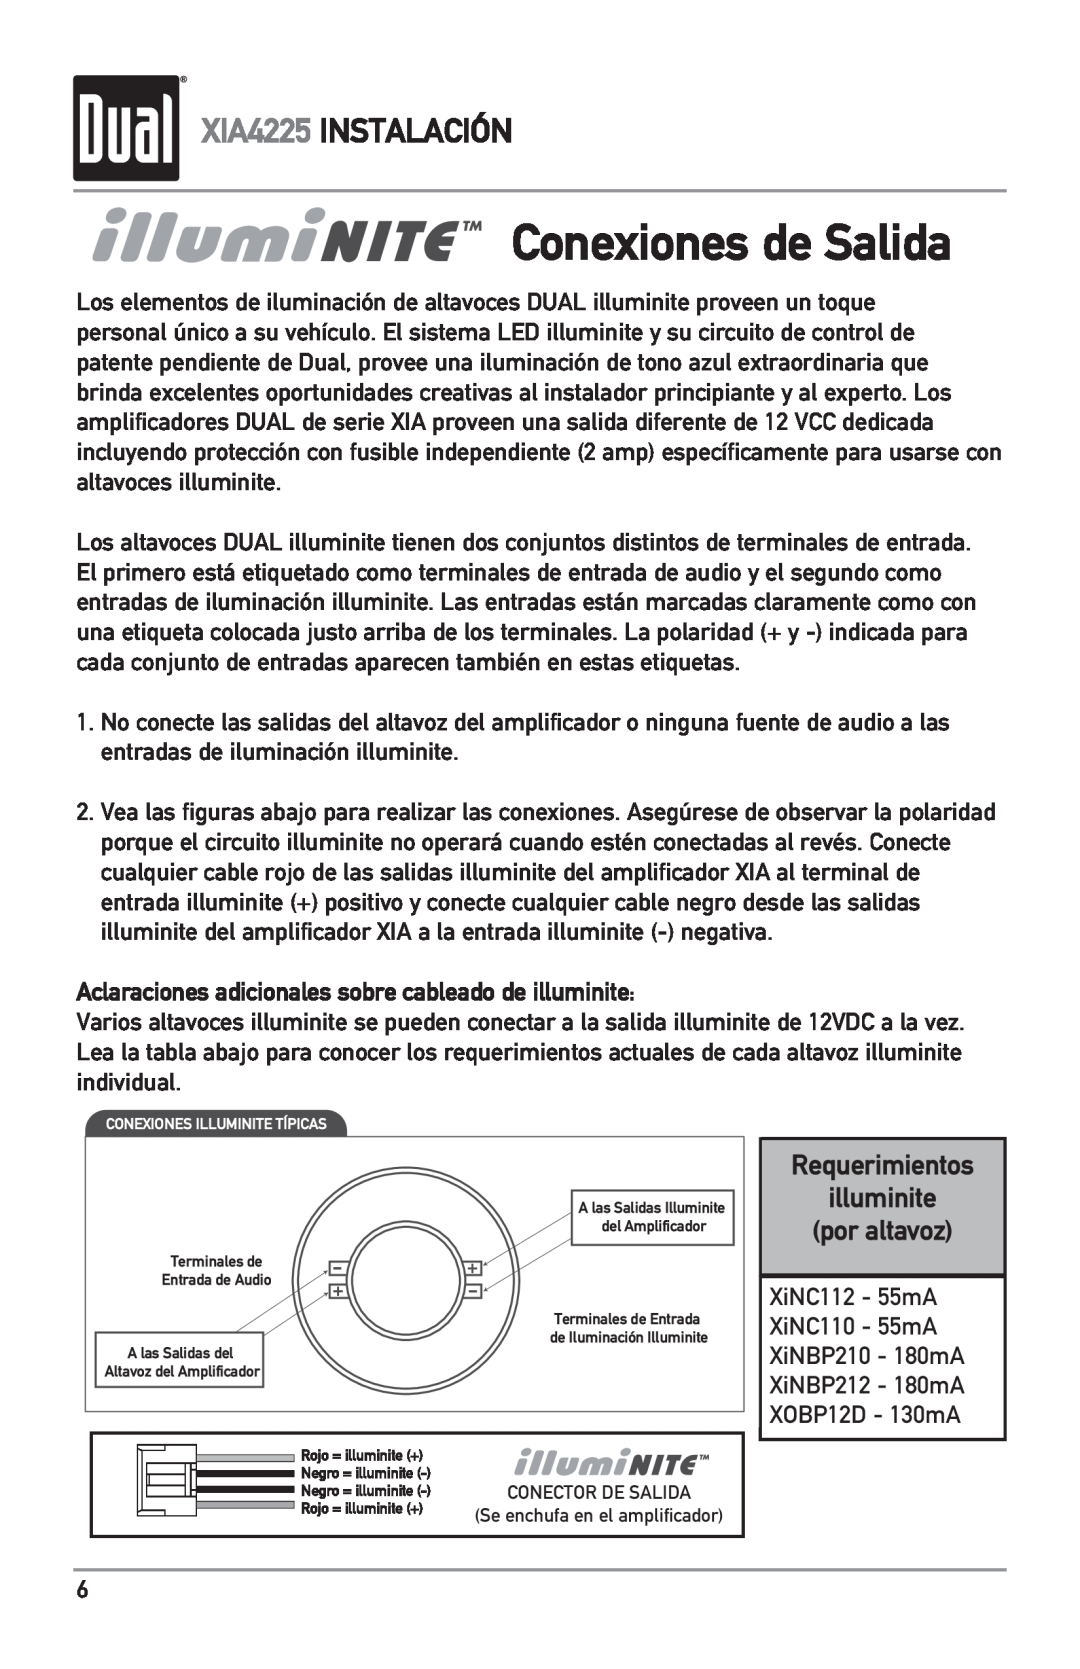 Dual owner manual Conexiones de Salida, Requerimientos illuminite por altavoz, XIA4225 INSTALACIÓN 